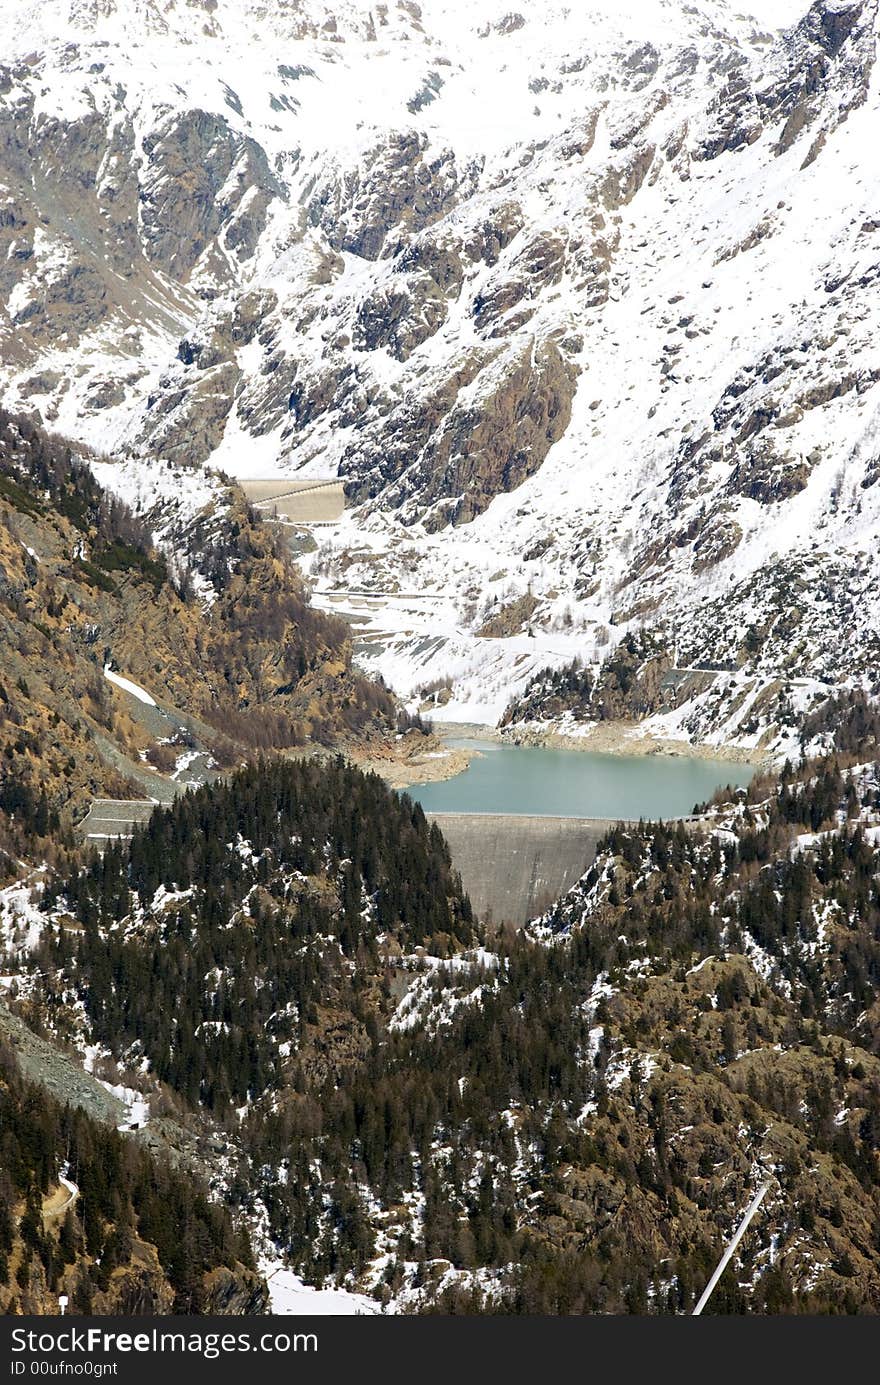 View of an alpine dam